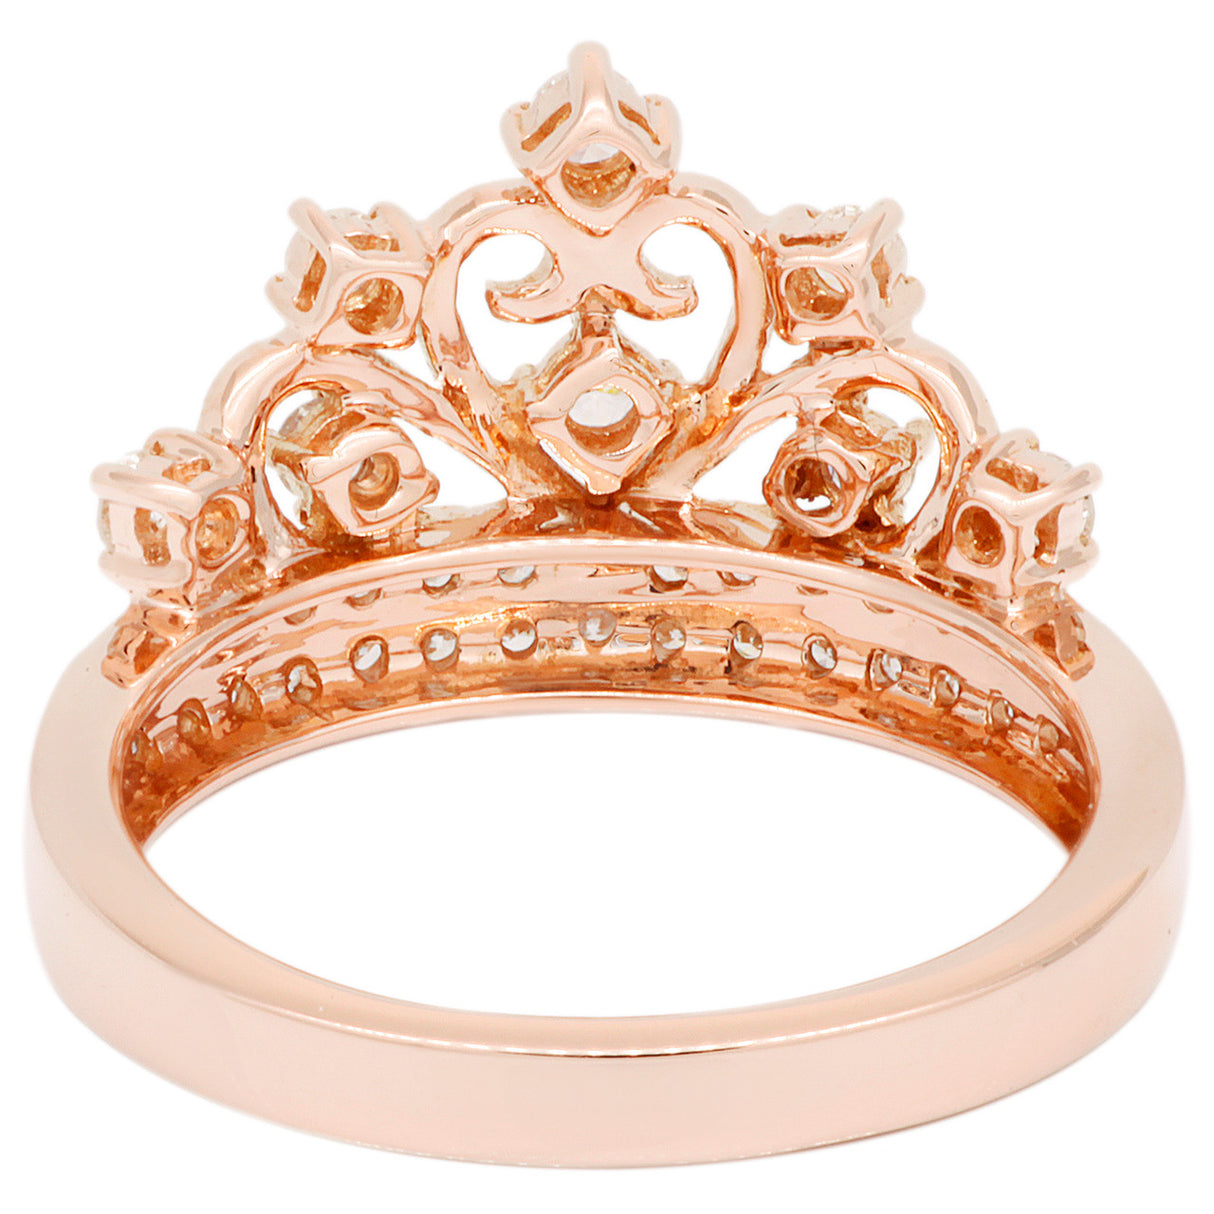 18K Rose Gold 0.54 Carat Diamond Ring